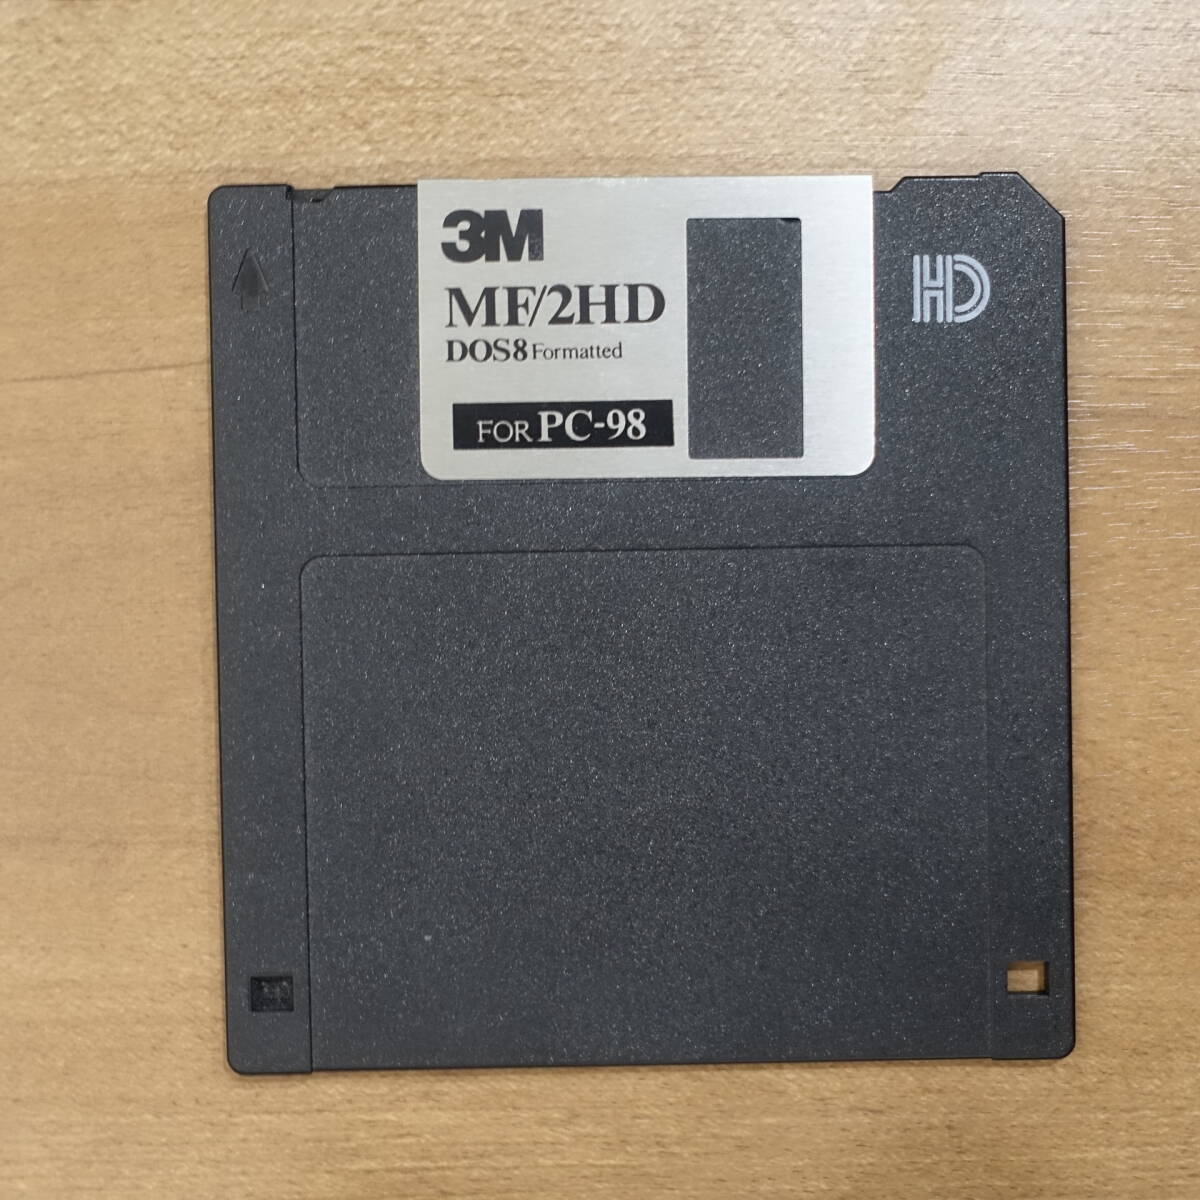  floppy disk 3.5 -inch 3M MF/2HD floppy disk check settled 